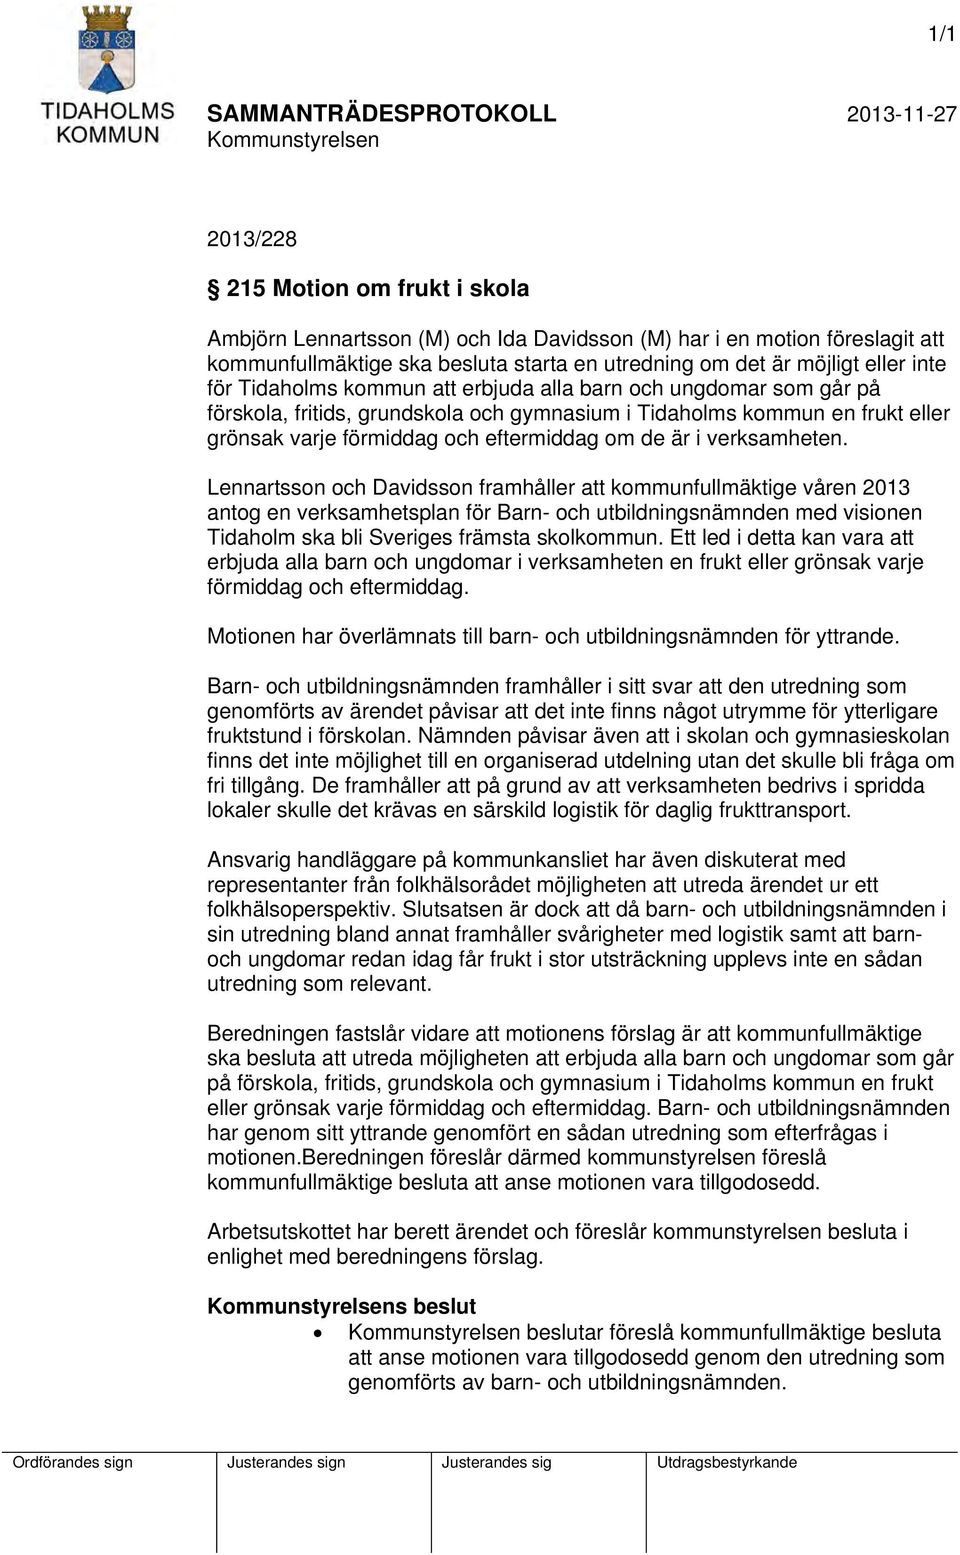 verksamheten. Lennartsson och Davidsson framhåller att kommunfullmäktige våren 2013 antog en verksamhetsplan för Barn- och utbildningsnämnden med visionen Tidaholm ska bli Sveriges främsta skolkommun.